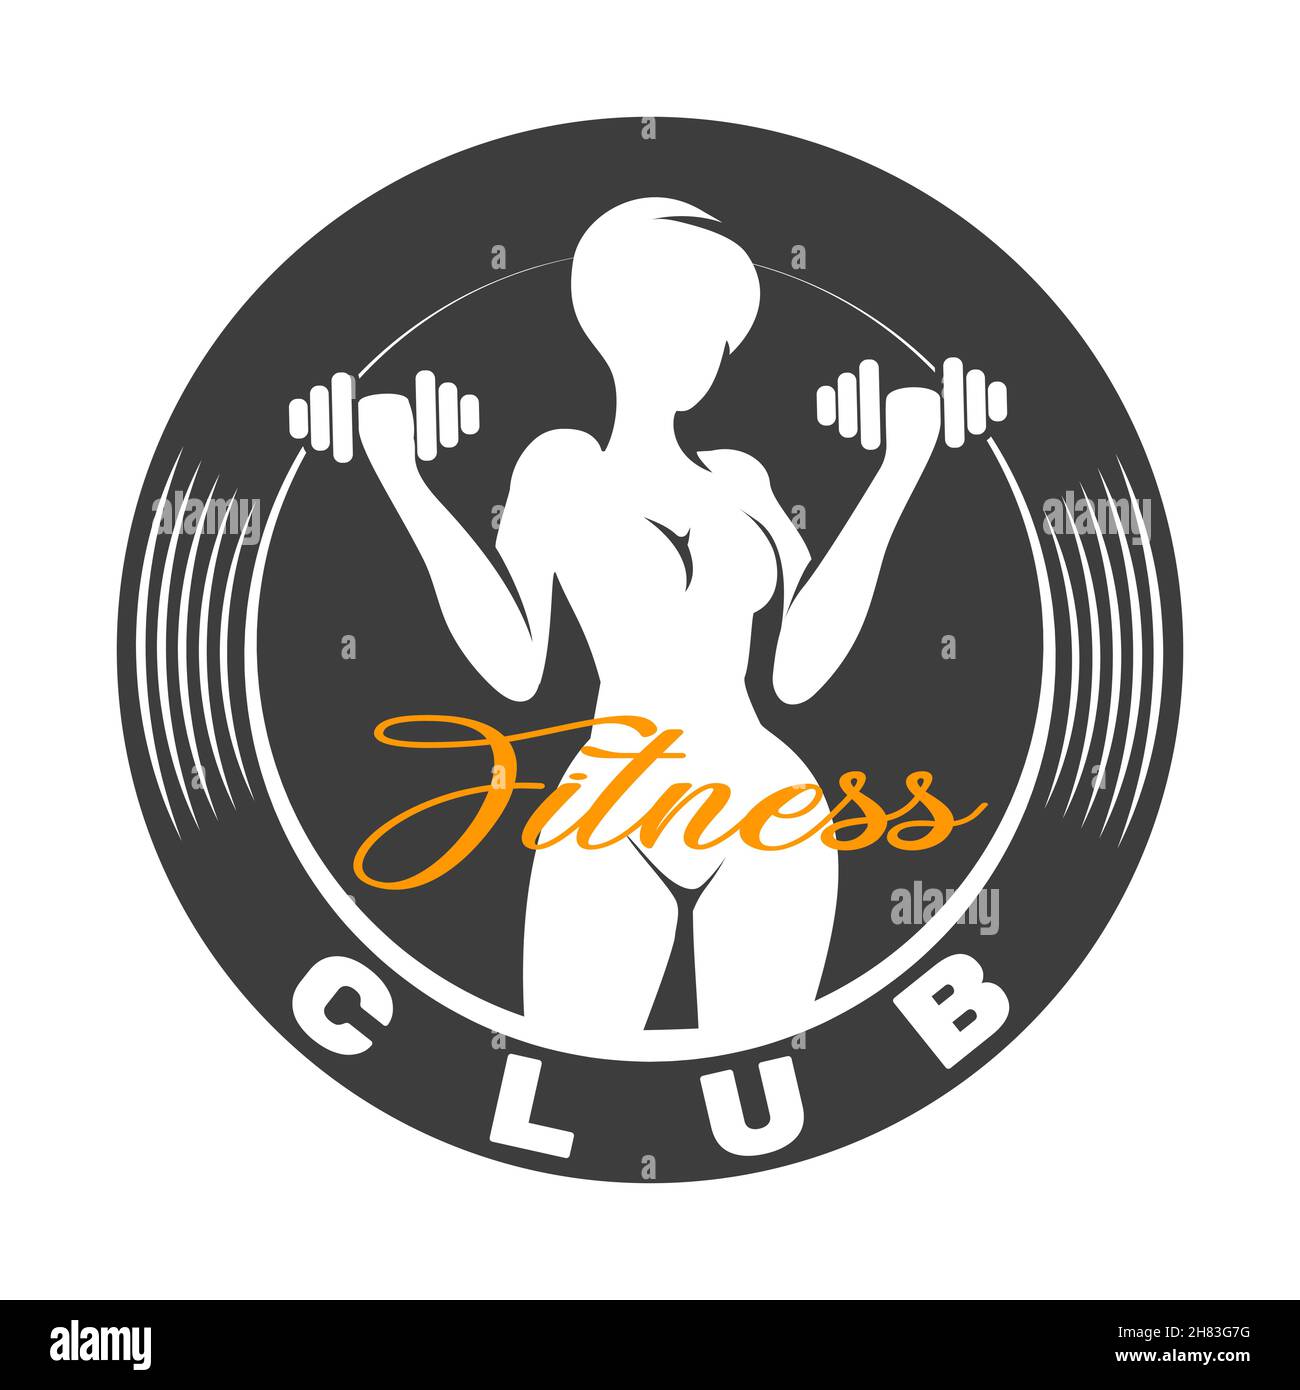 Logo oder Emblem des Fitnessclubs mit Frau-Silhouette. Frau hält Kurzhanteln. Isoliert auf weißem Hintergrund. Stock Vektor